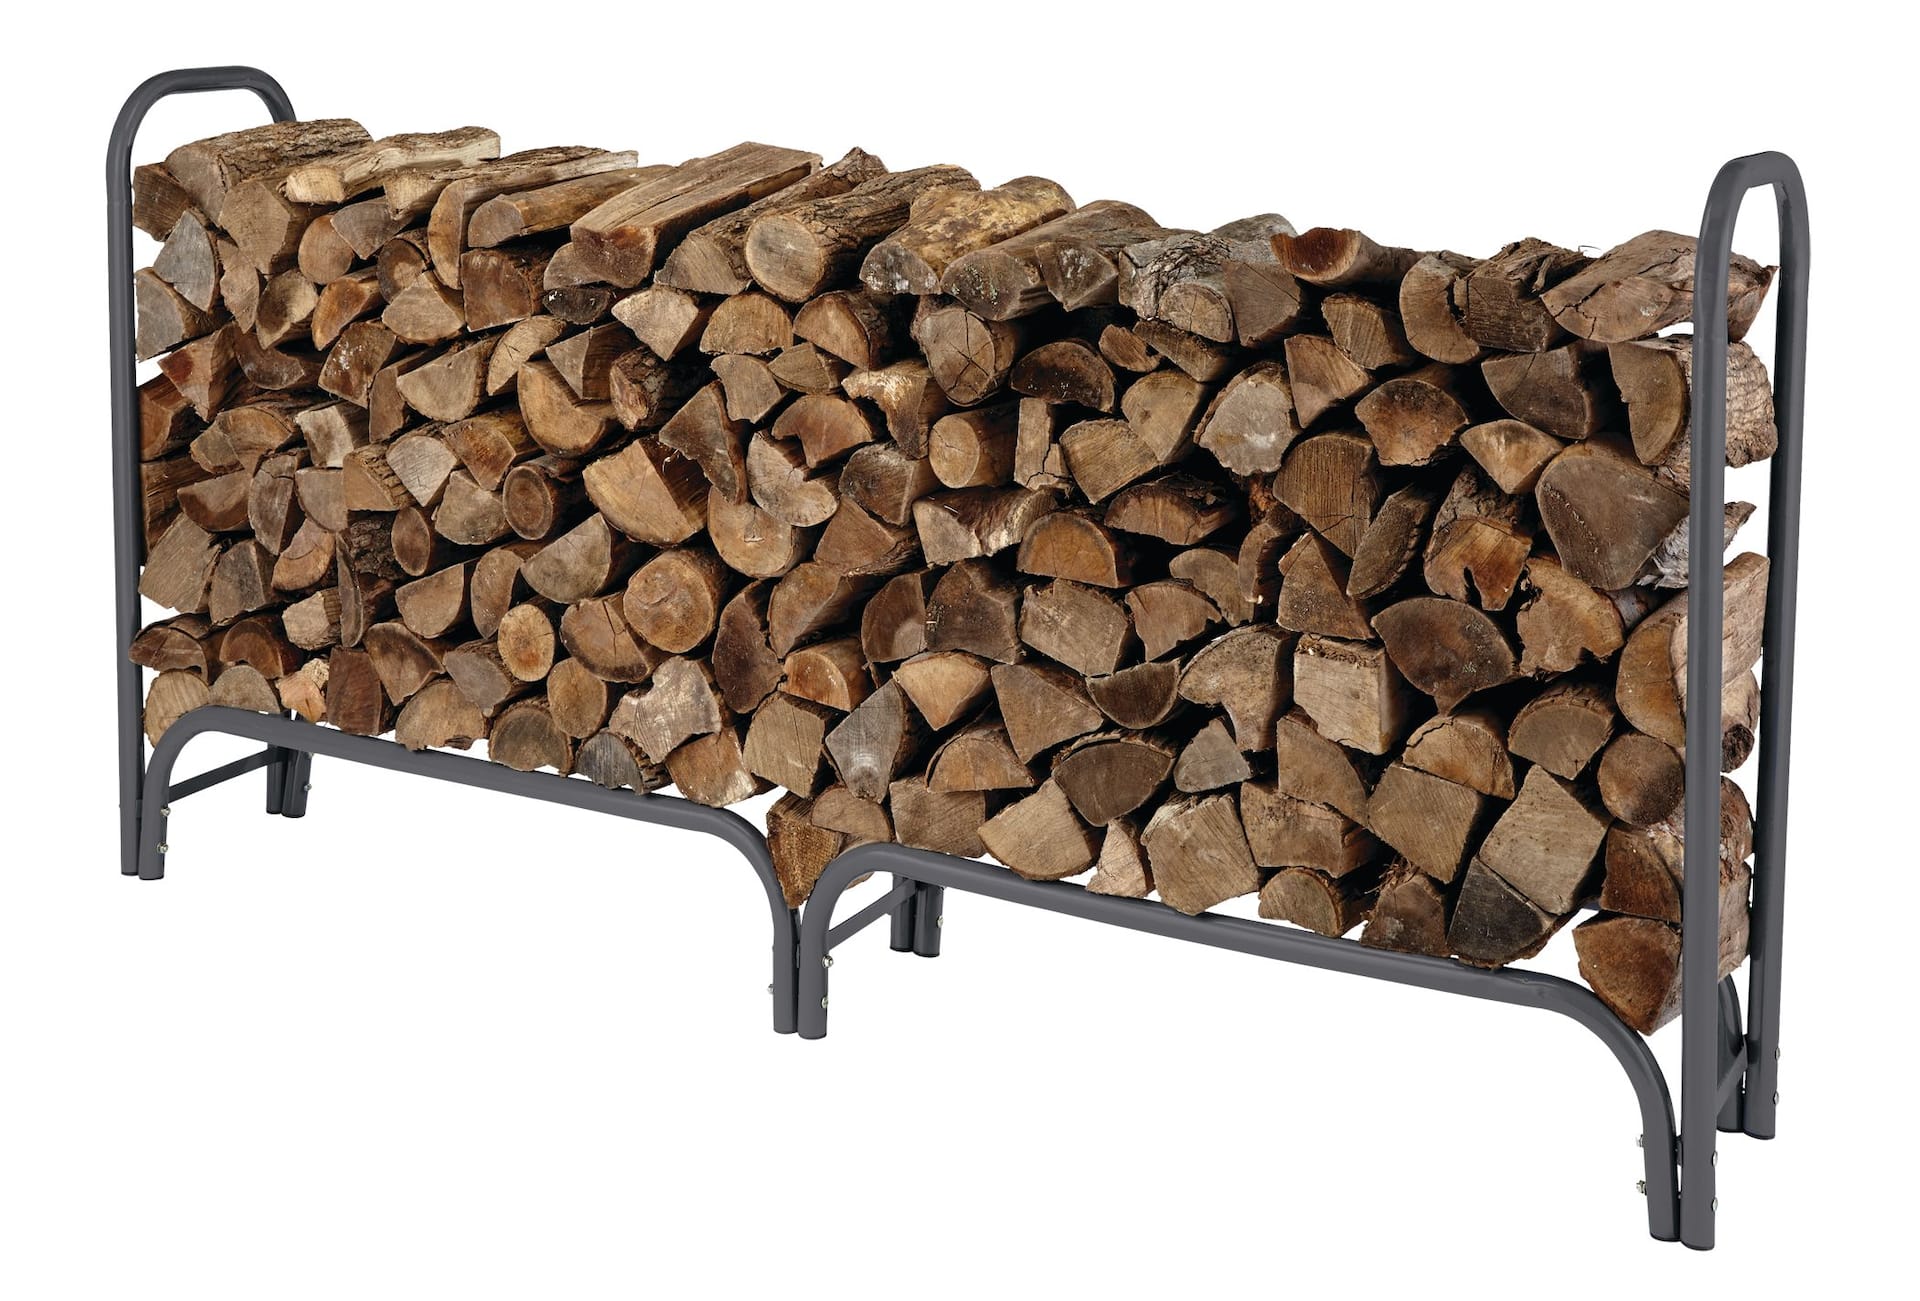 Yardworks 8-ft Steel Frame Firewood/Log Rack/Holder Canadian Tire